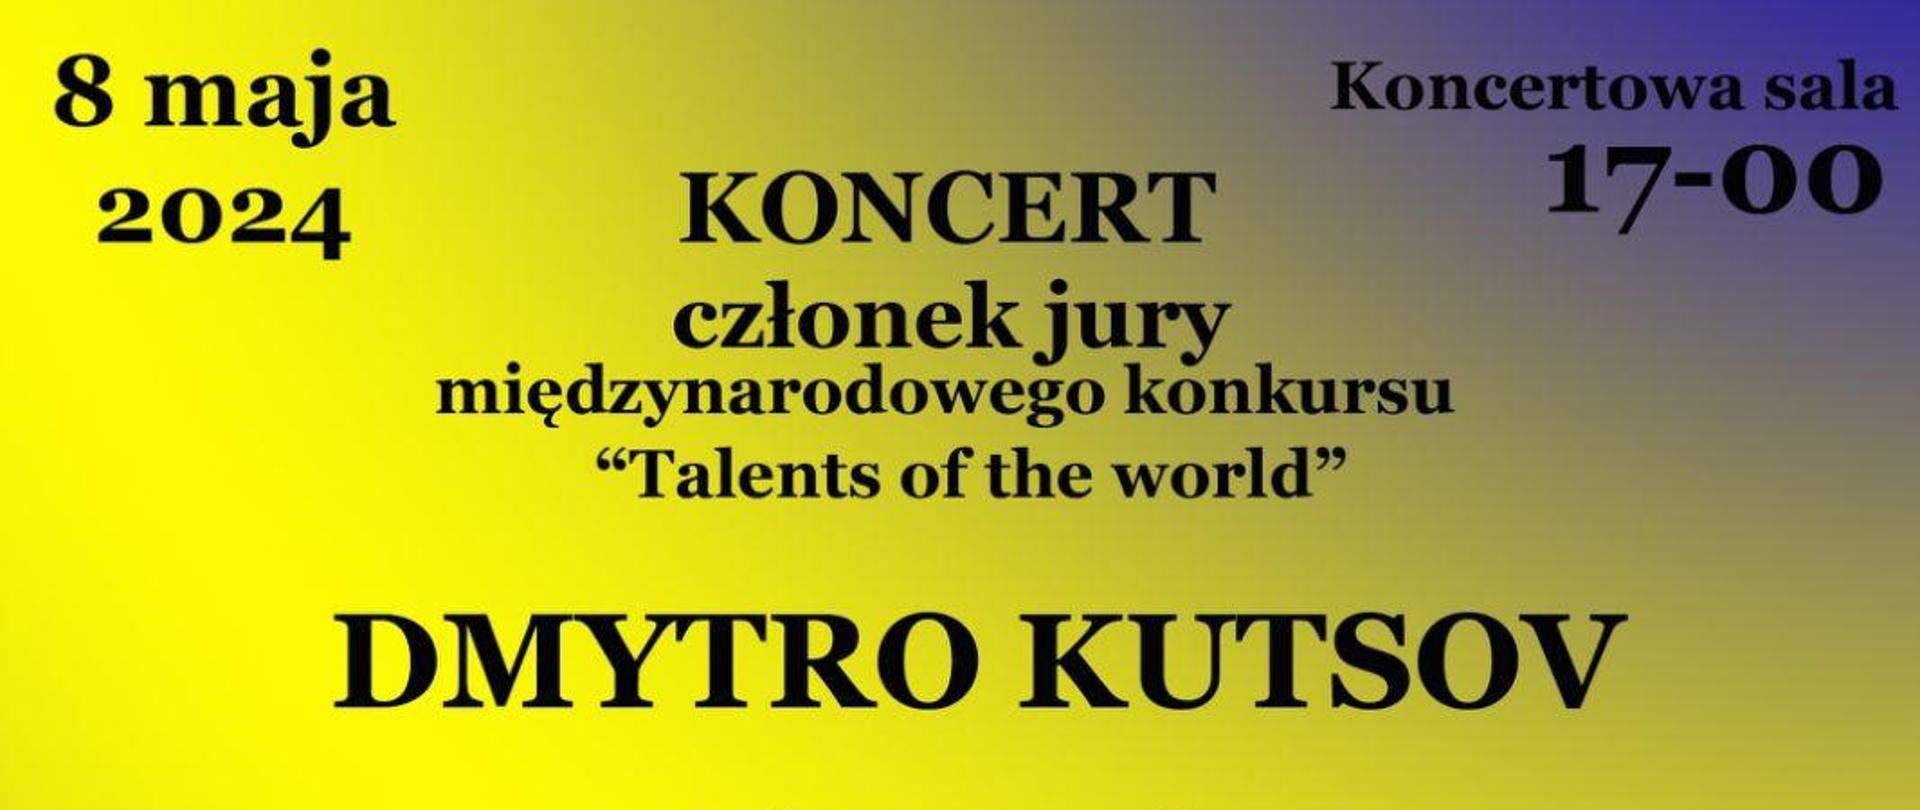 Plakat koncertu - Dmytro Kutsov - Sala koncertowa szkoły, 8 maja 2024r. Żółte tło, na środku duże zdjęcie wykonawcy koncertu. 